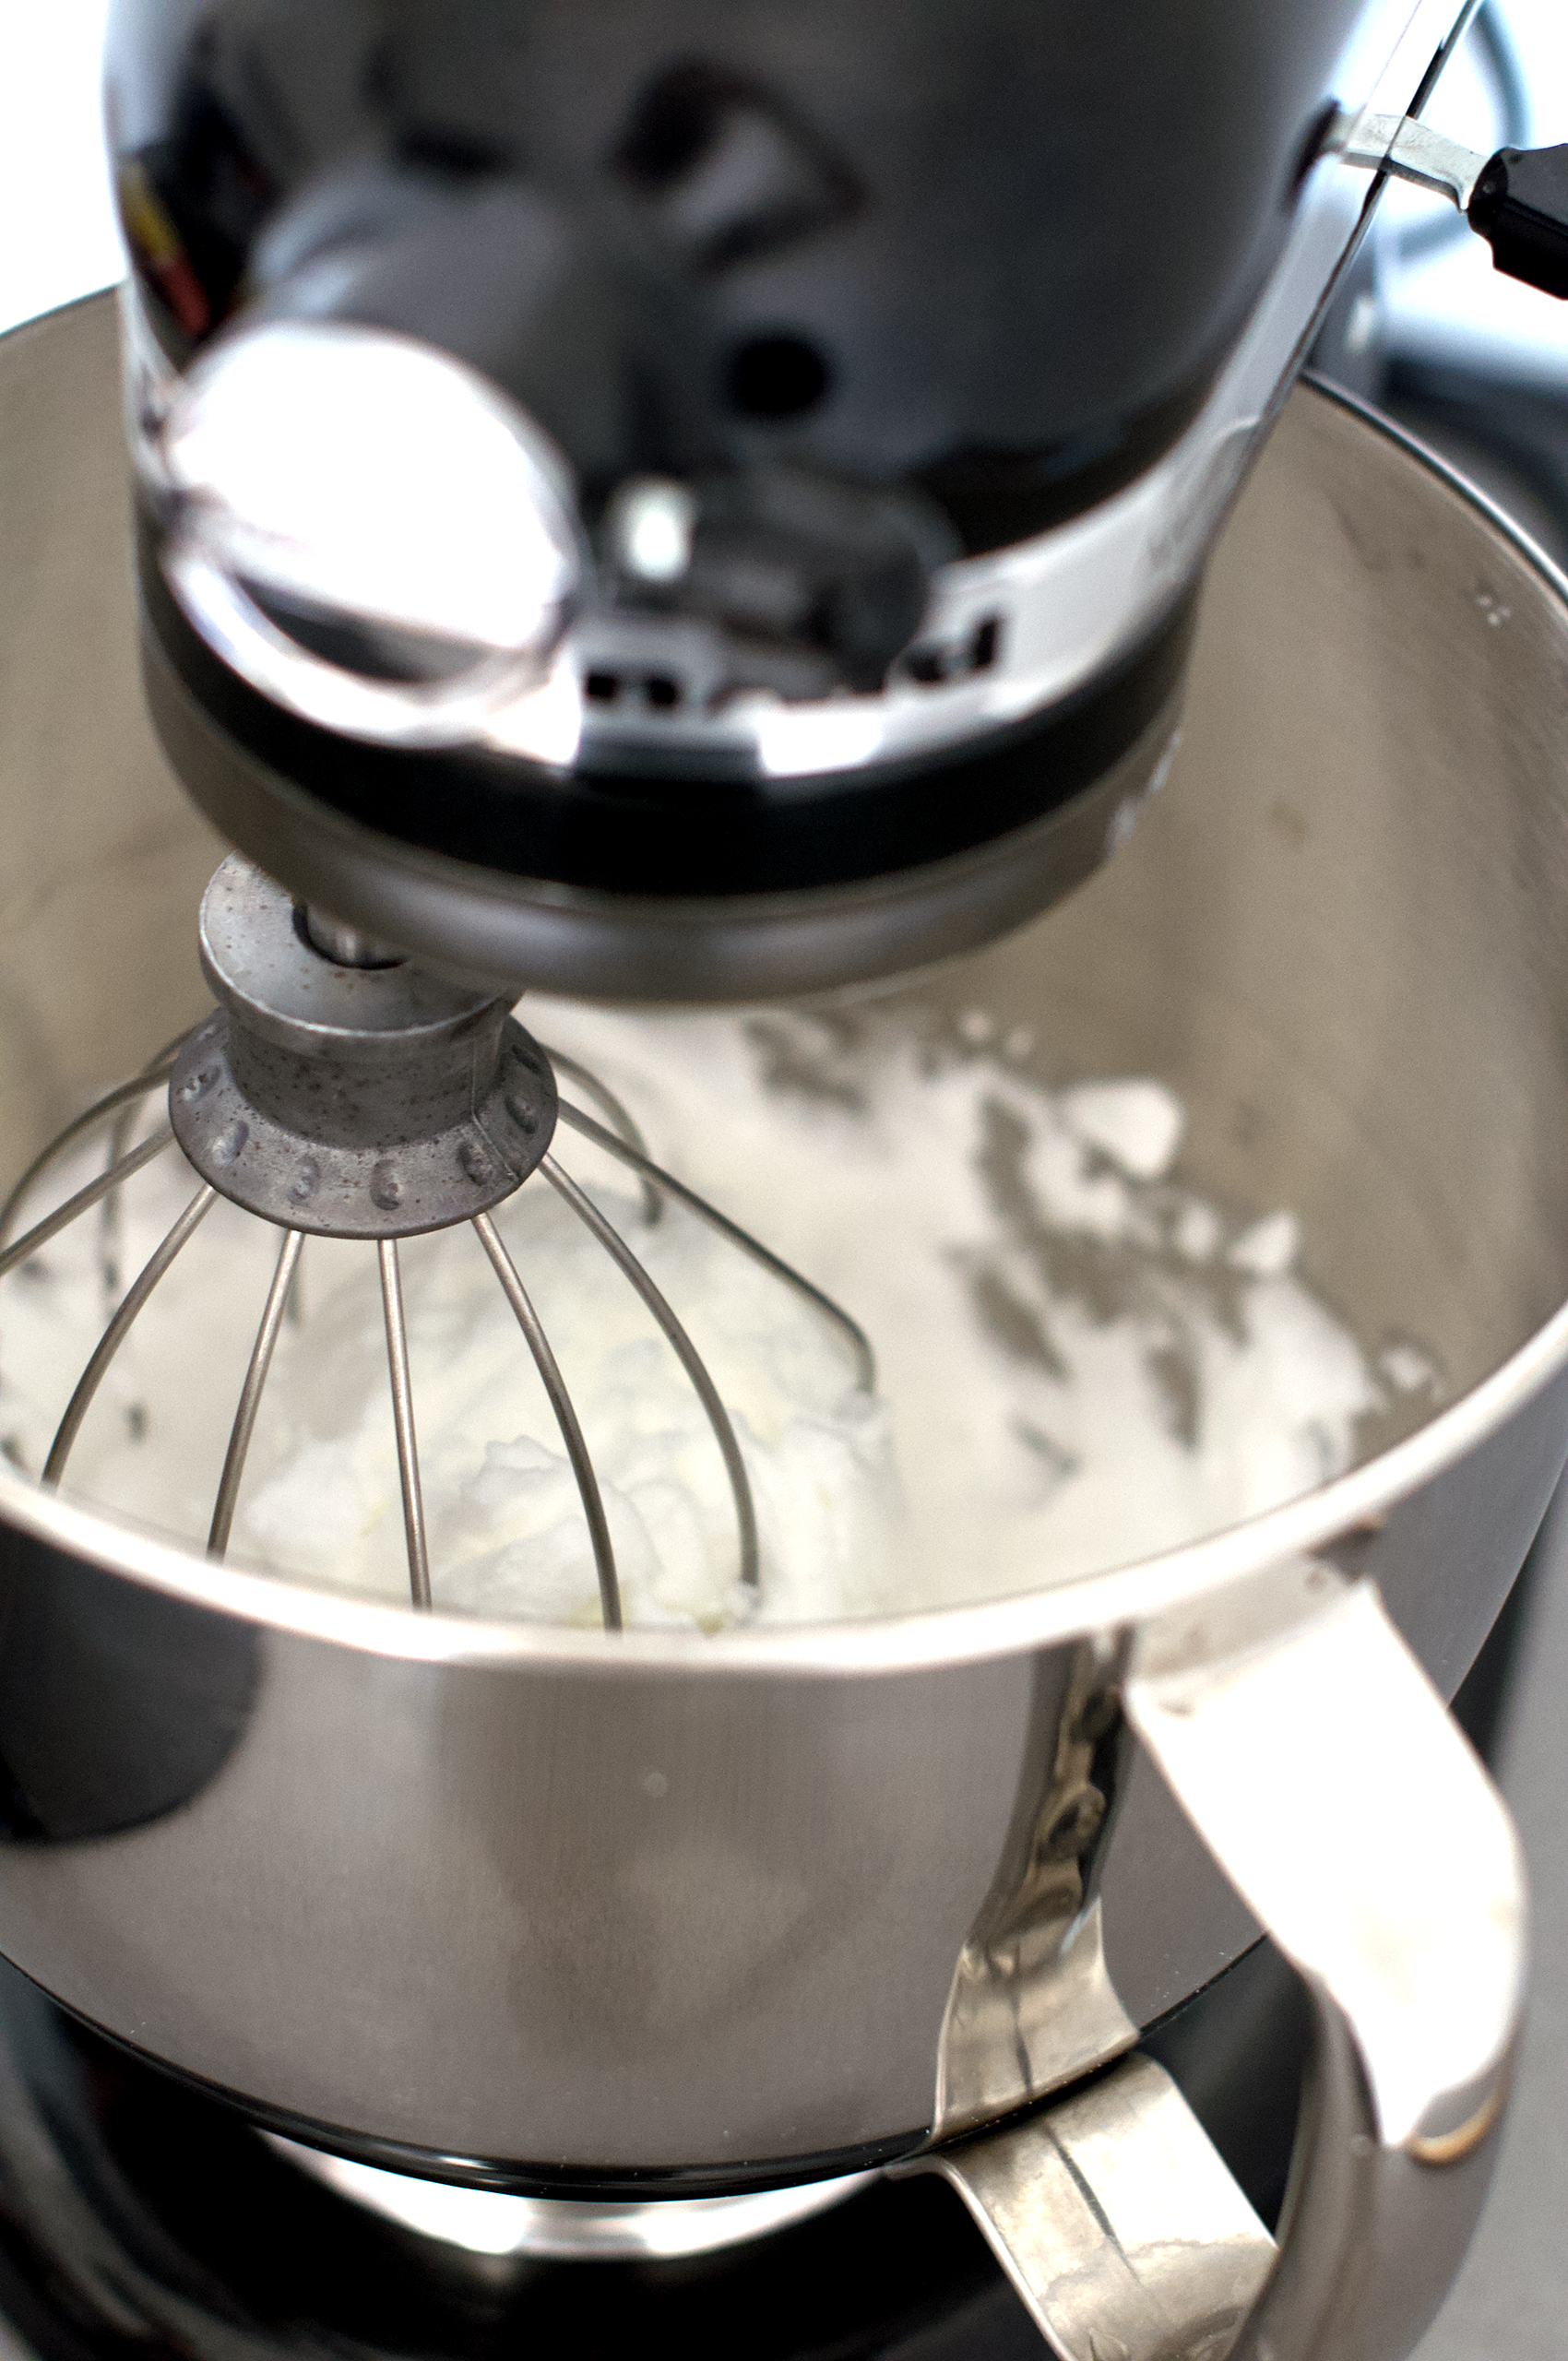 KitchenAid stand mixer whipping egg whites to stiff peaks